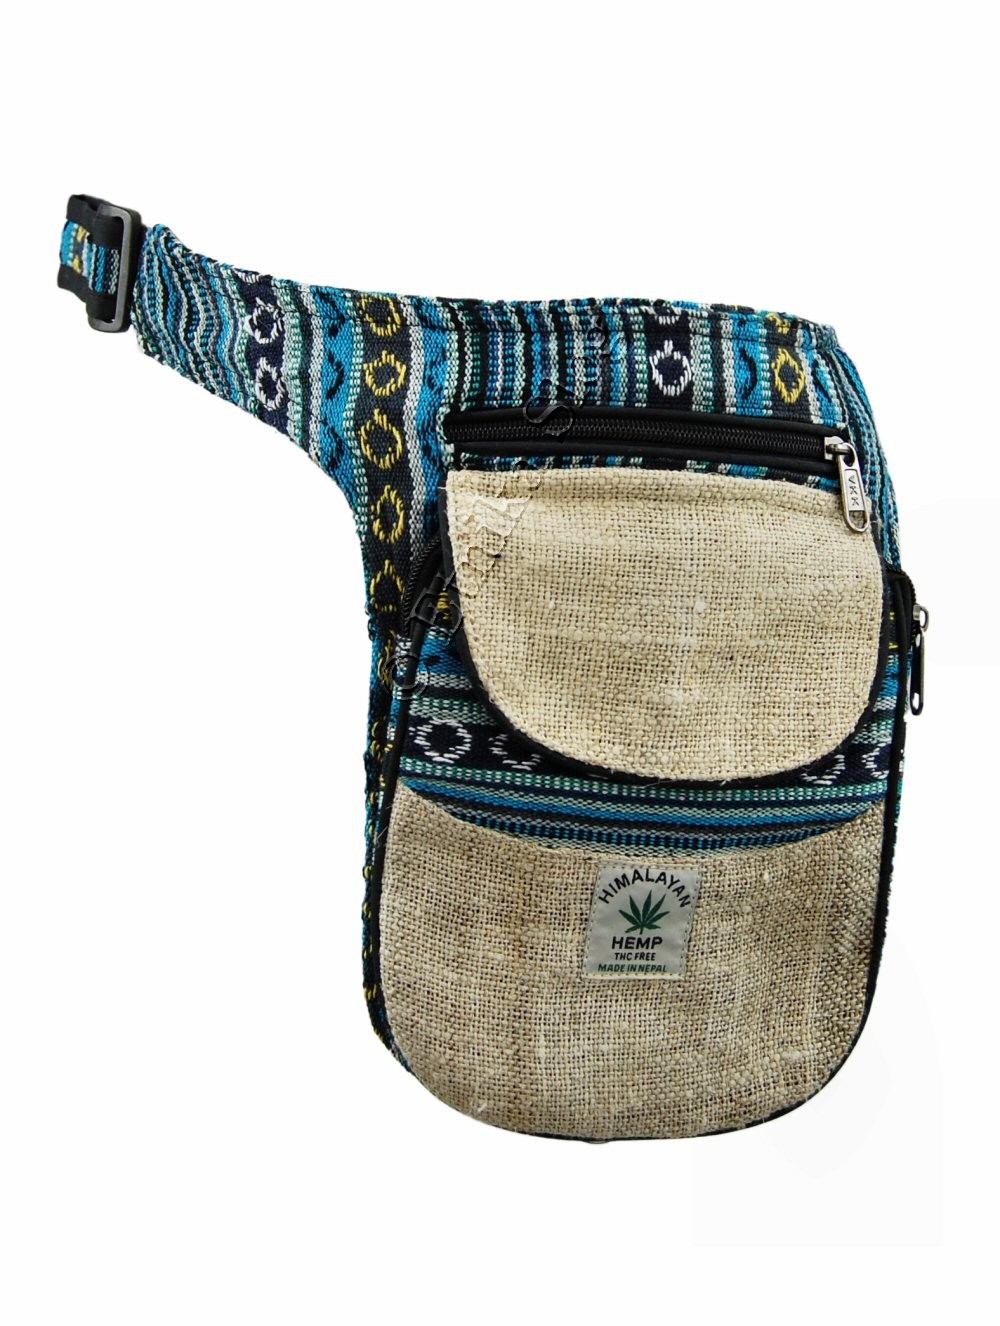 Buy Pure Hemp Backpack peace design Hemp Backpacks Hemp Bags online   Atrangi Gifting